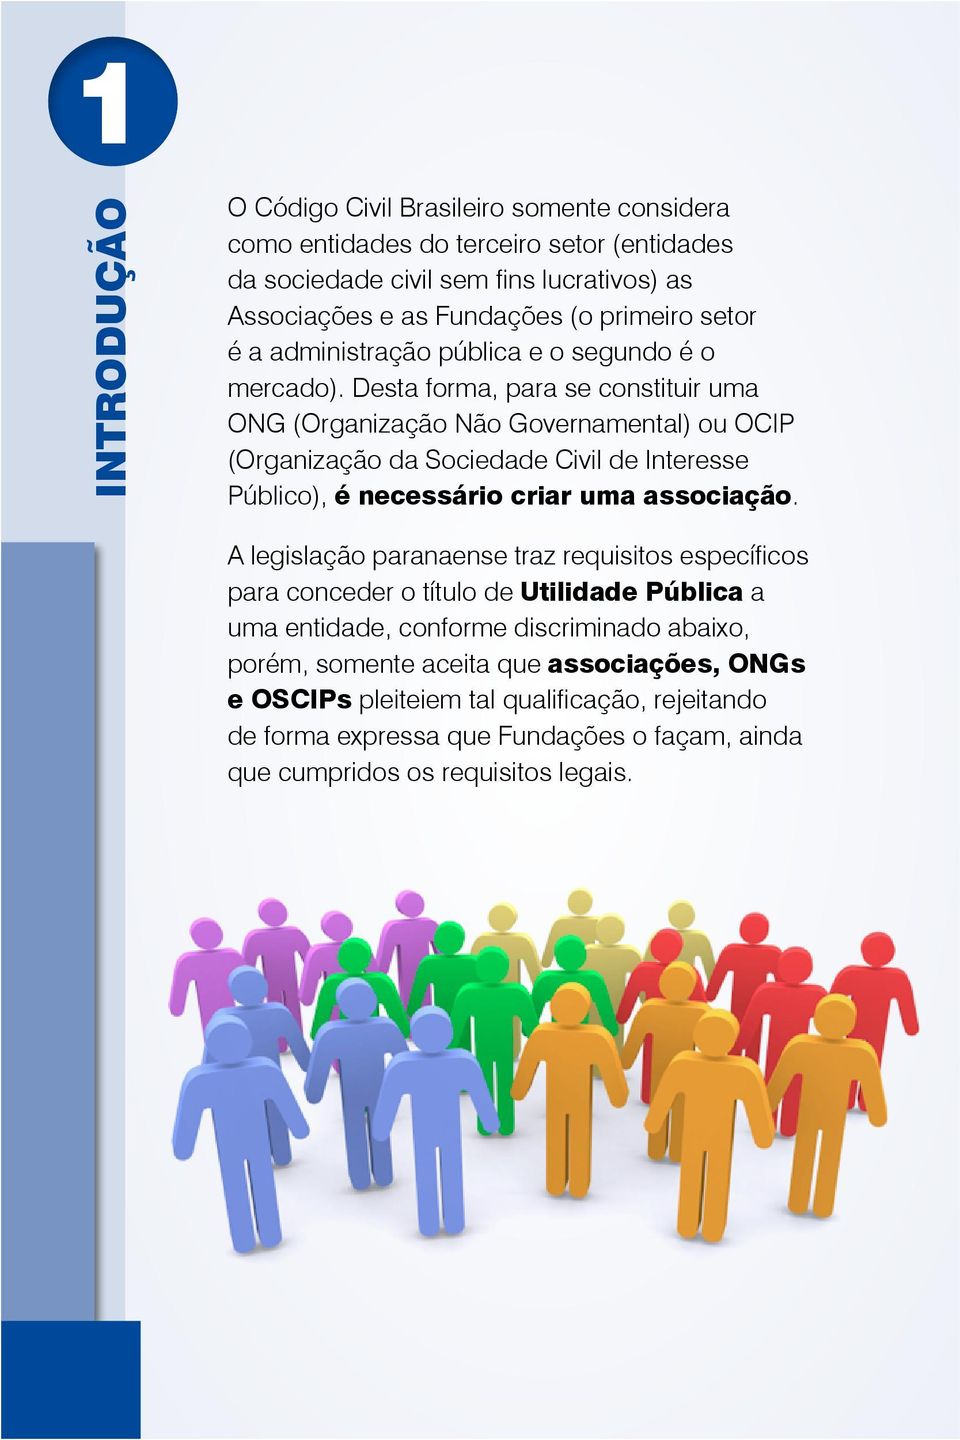 Desta forma, para se constituir uma ONG (Organização Não Governamental) ou OCIP (Organização da Sociedade Civil de Interesse Público), é necessário criar uma associação.